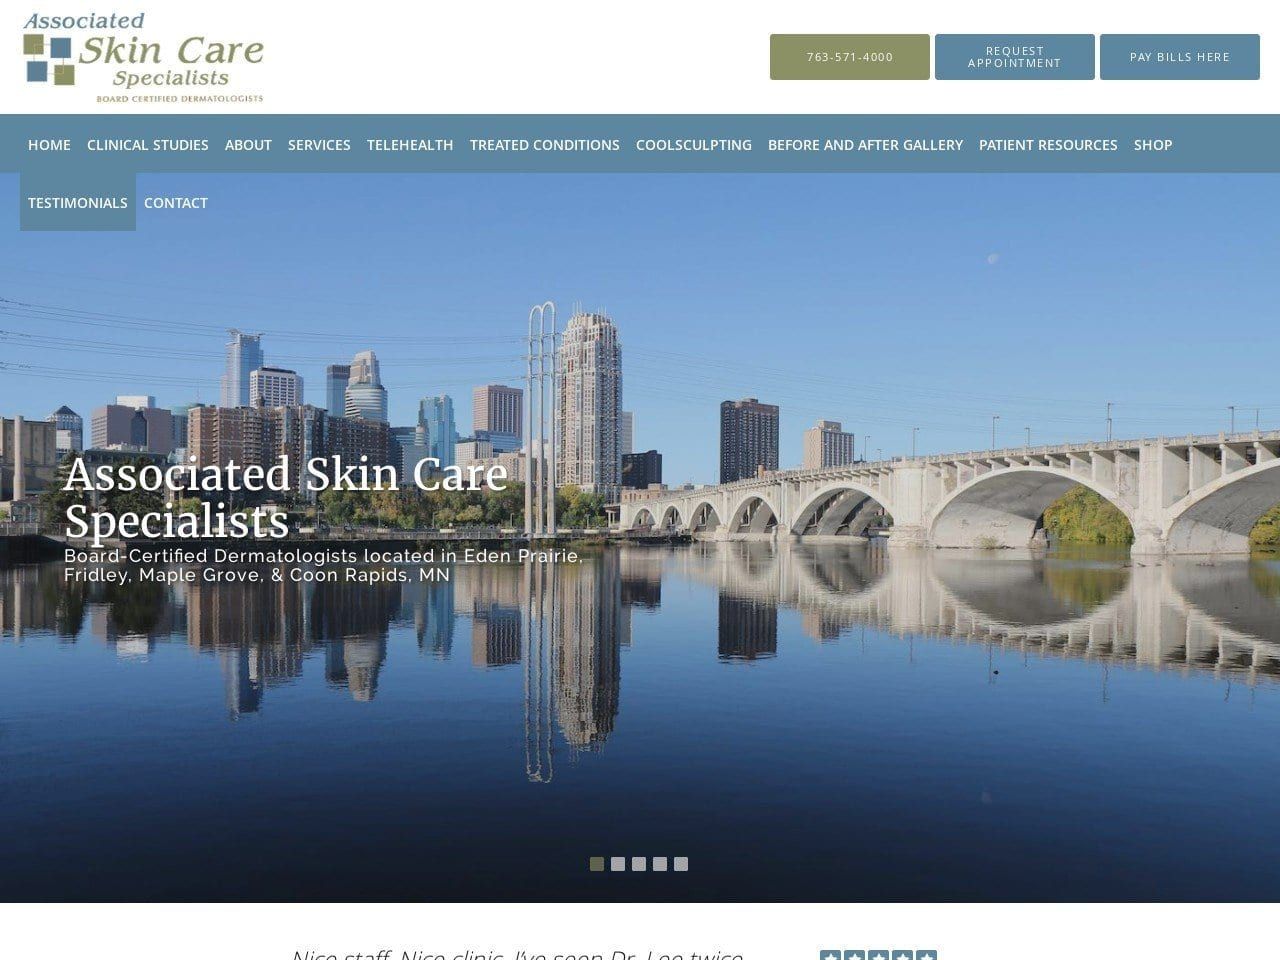 Associated Skin Care Specialists Website Screenshot from associatedskincare.com